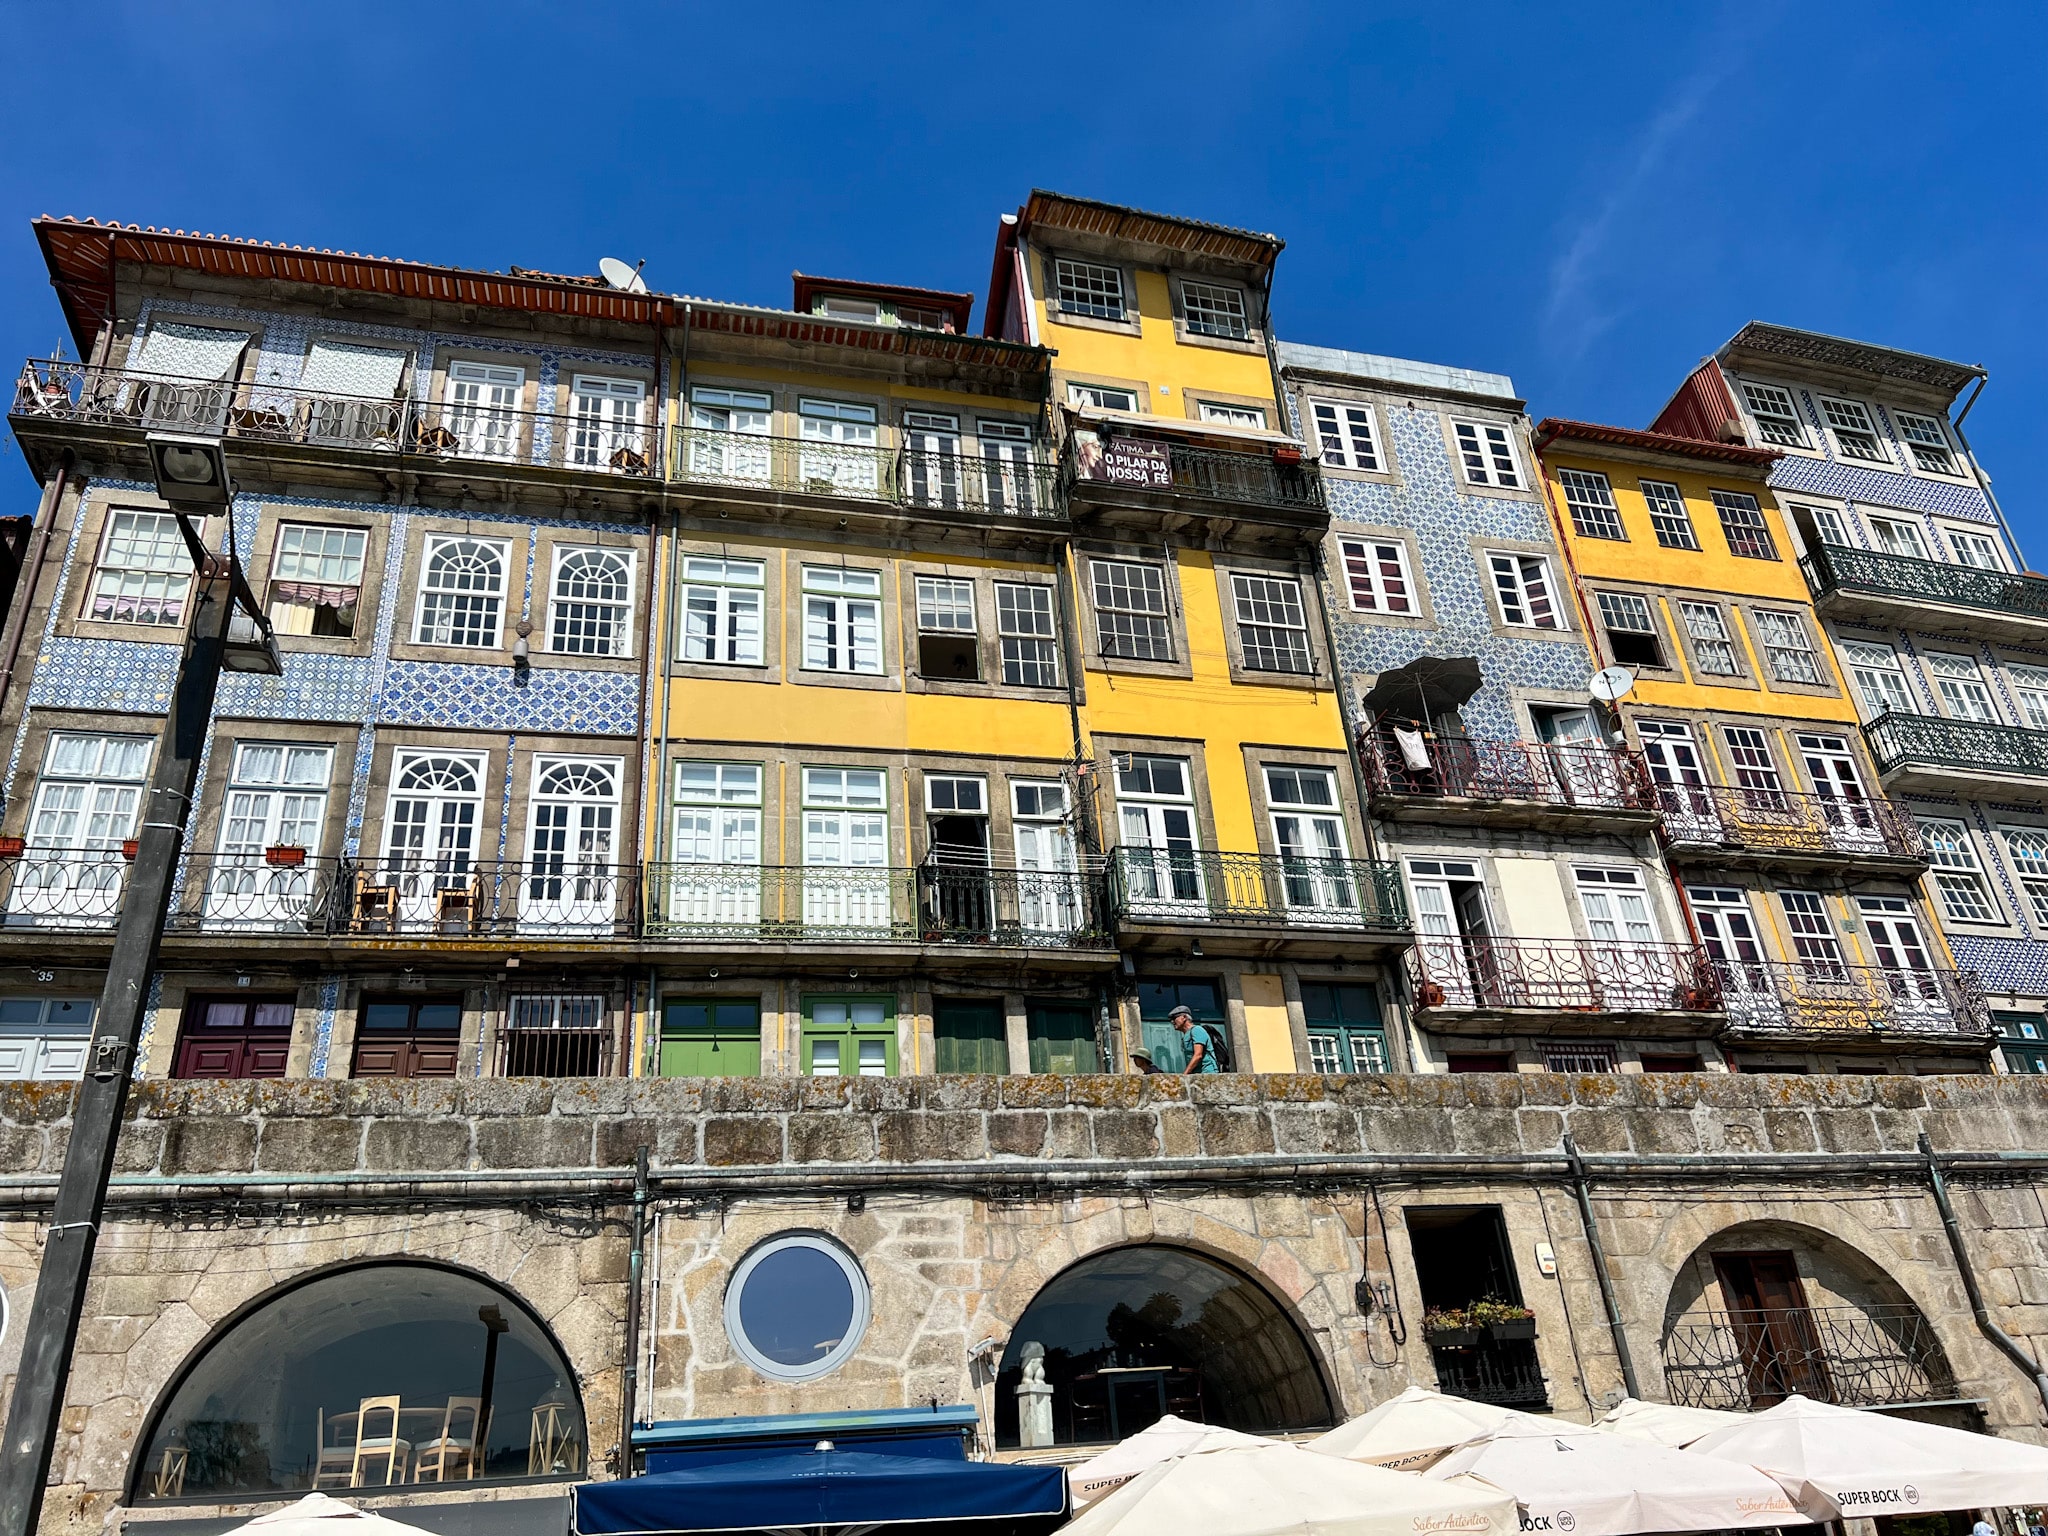 colorful homes and cobblestone streets along the cais da ribeira